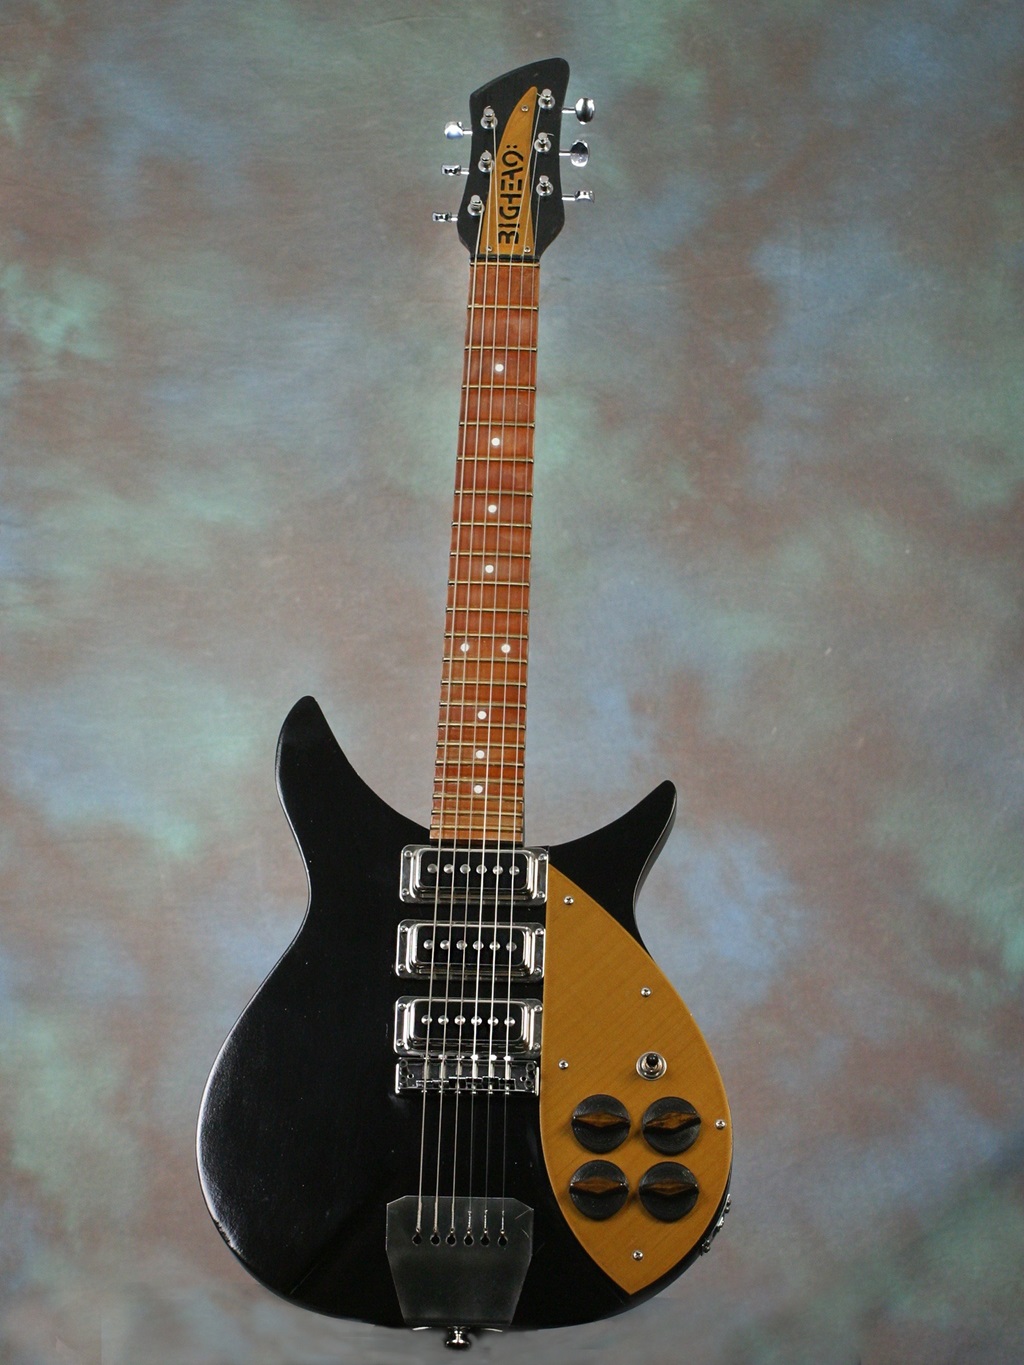 Brown and black 3D printed electric guitar